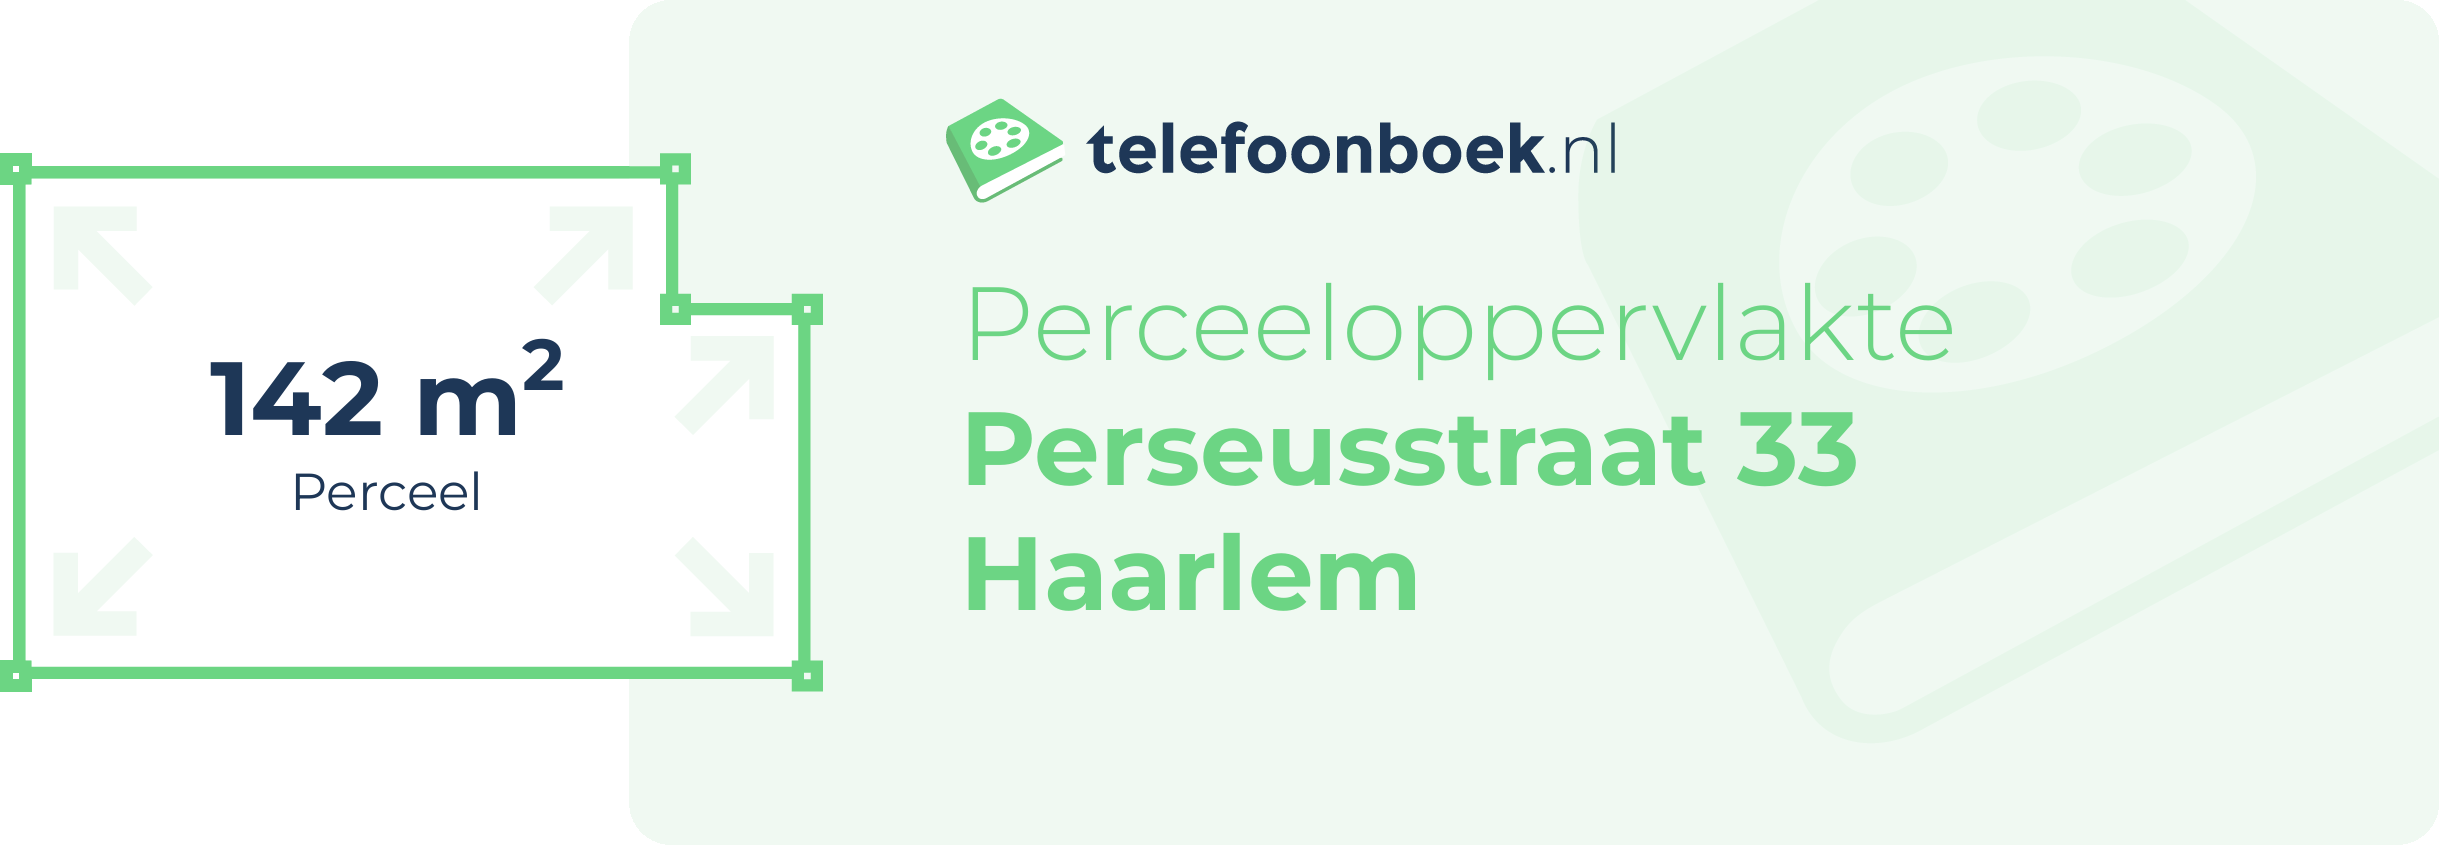 Perceeloppervlakte Perseusstraat 33 Haarlem